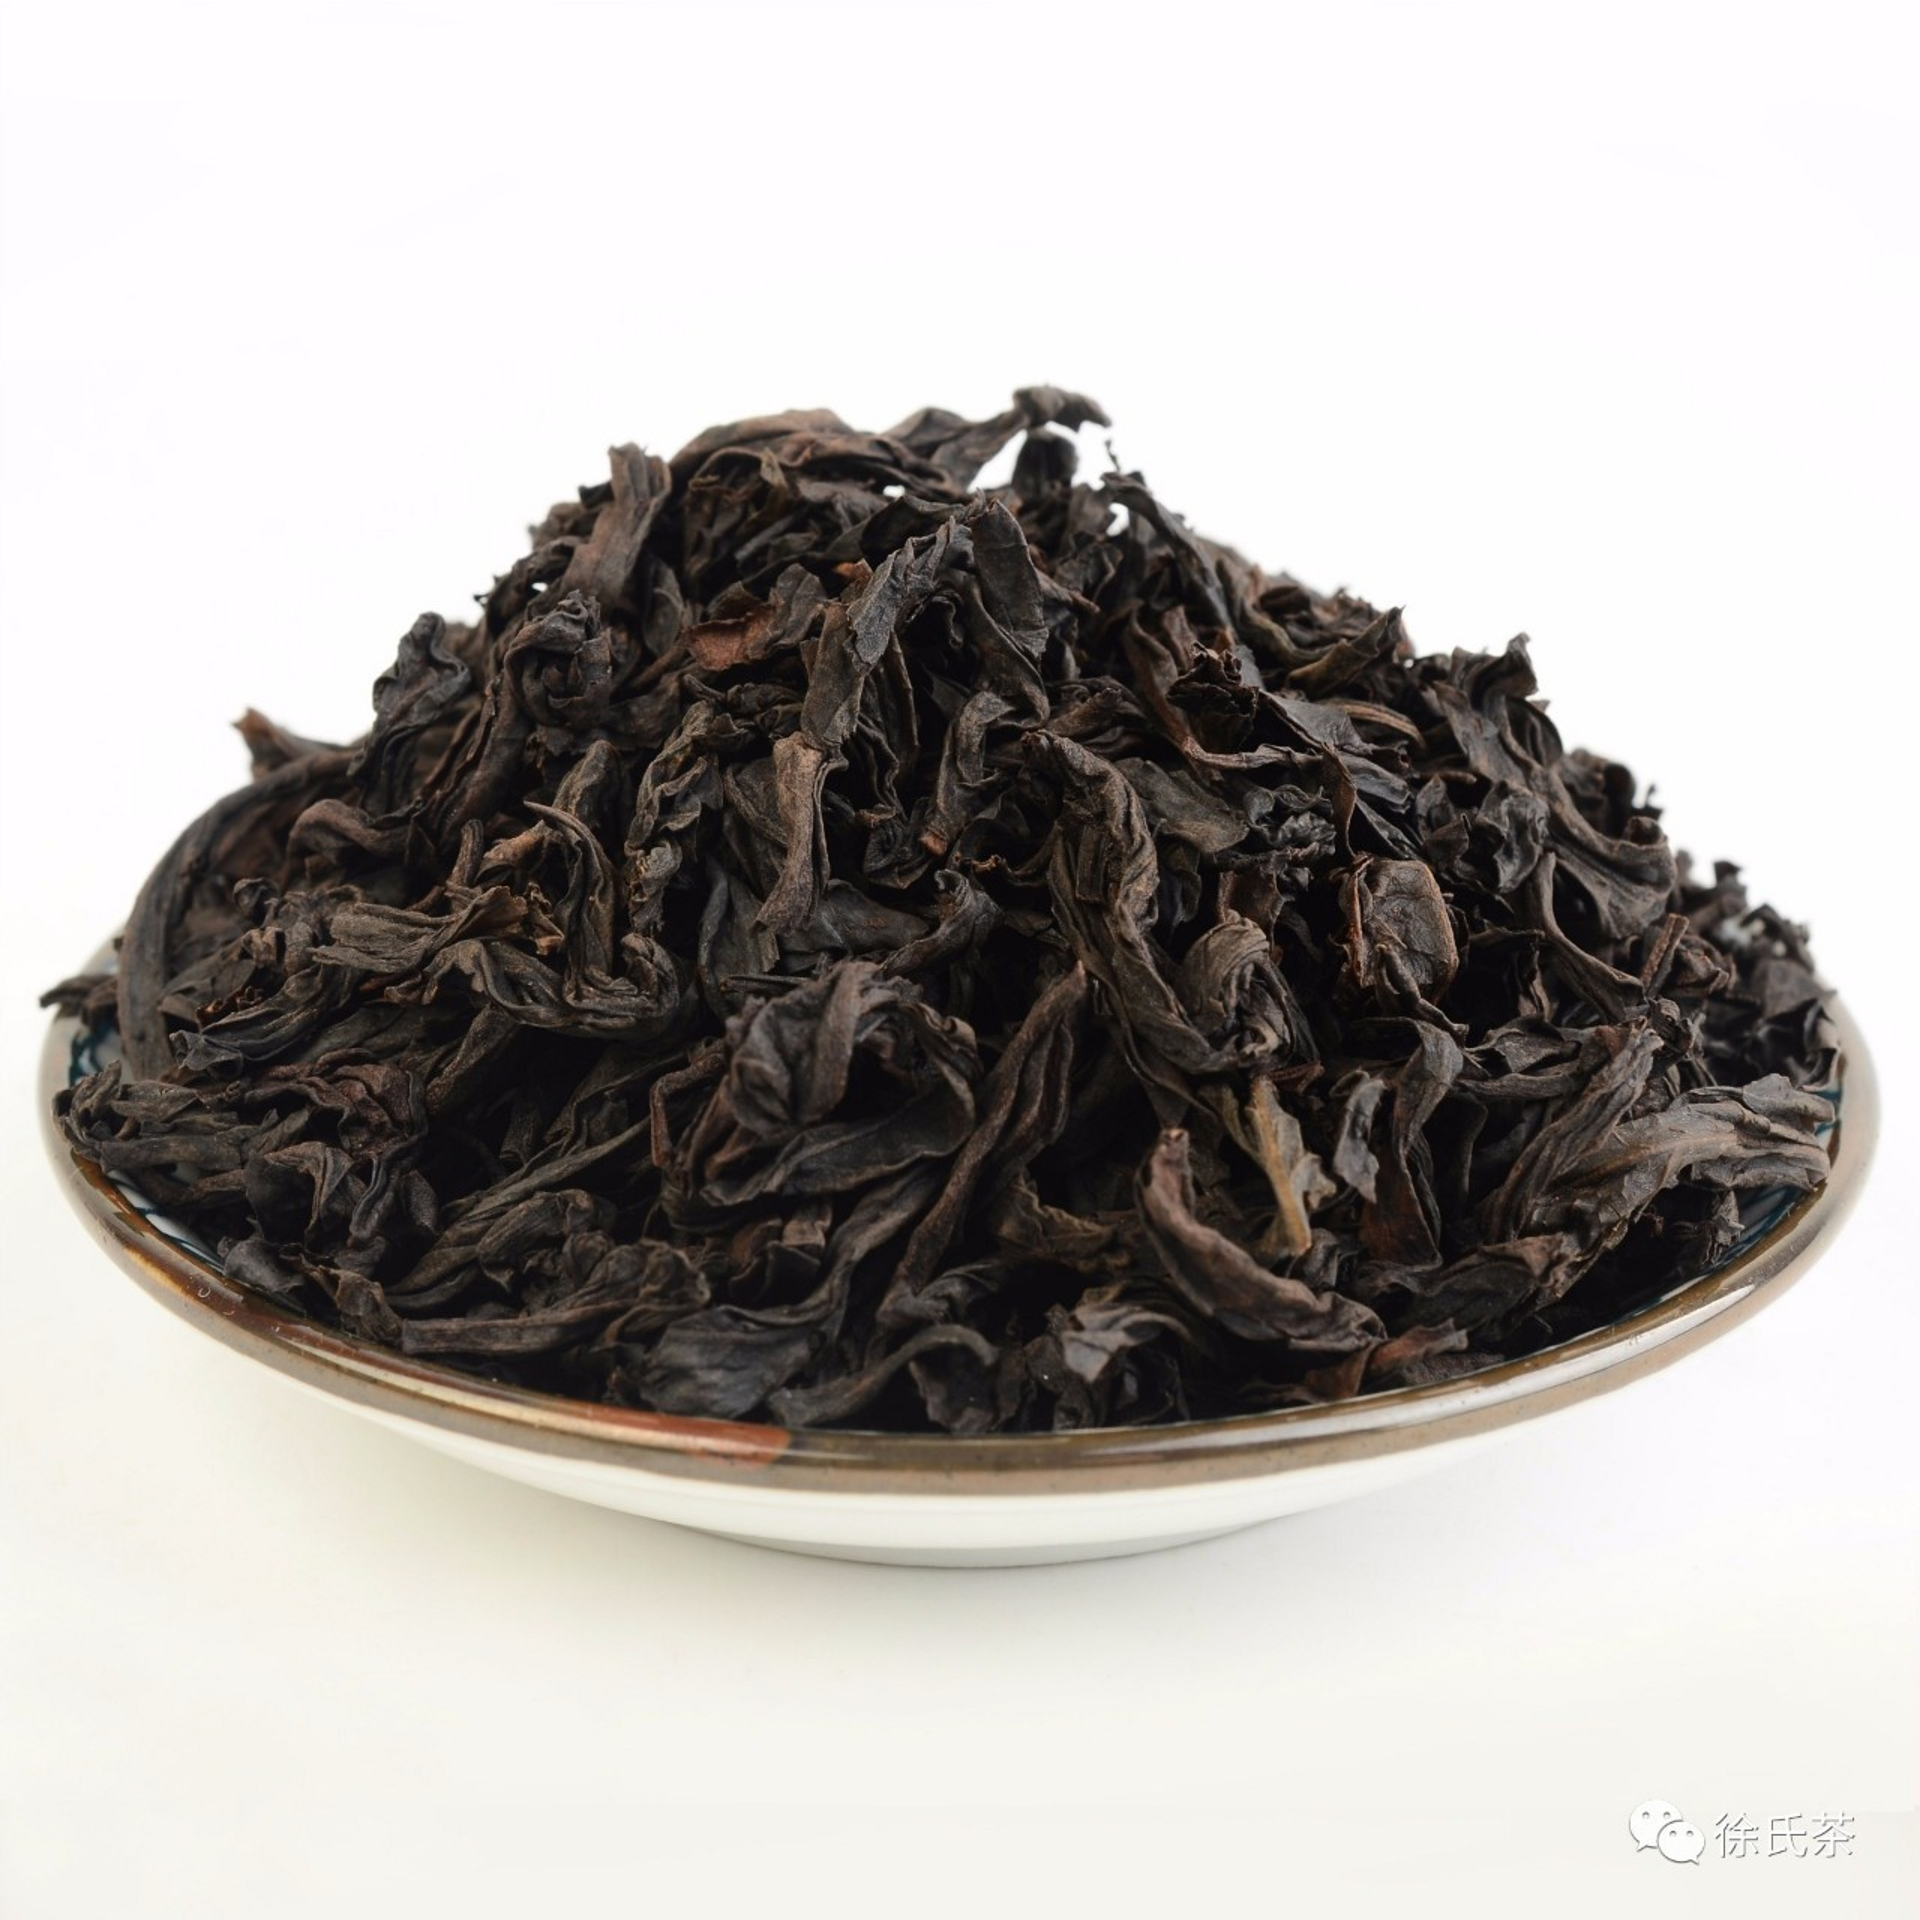 一,什么是武夷岩茶武夷岩茶是中国传统名茶,是具有岩韵品质特征的乌龙